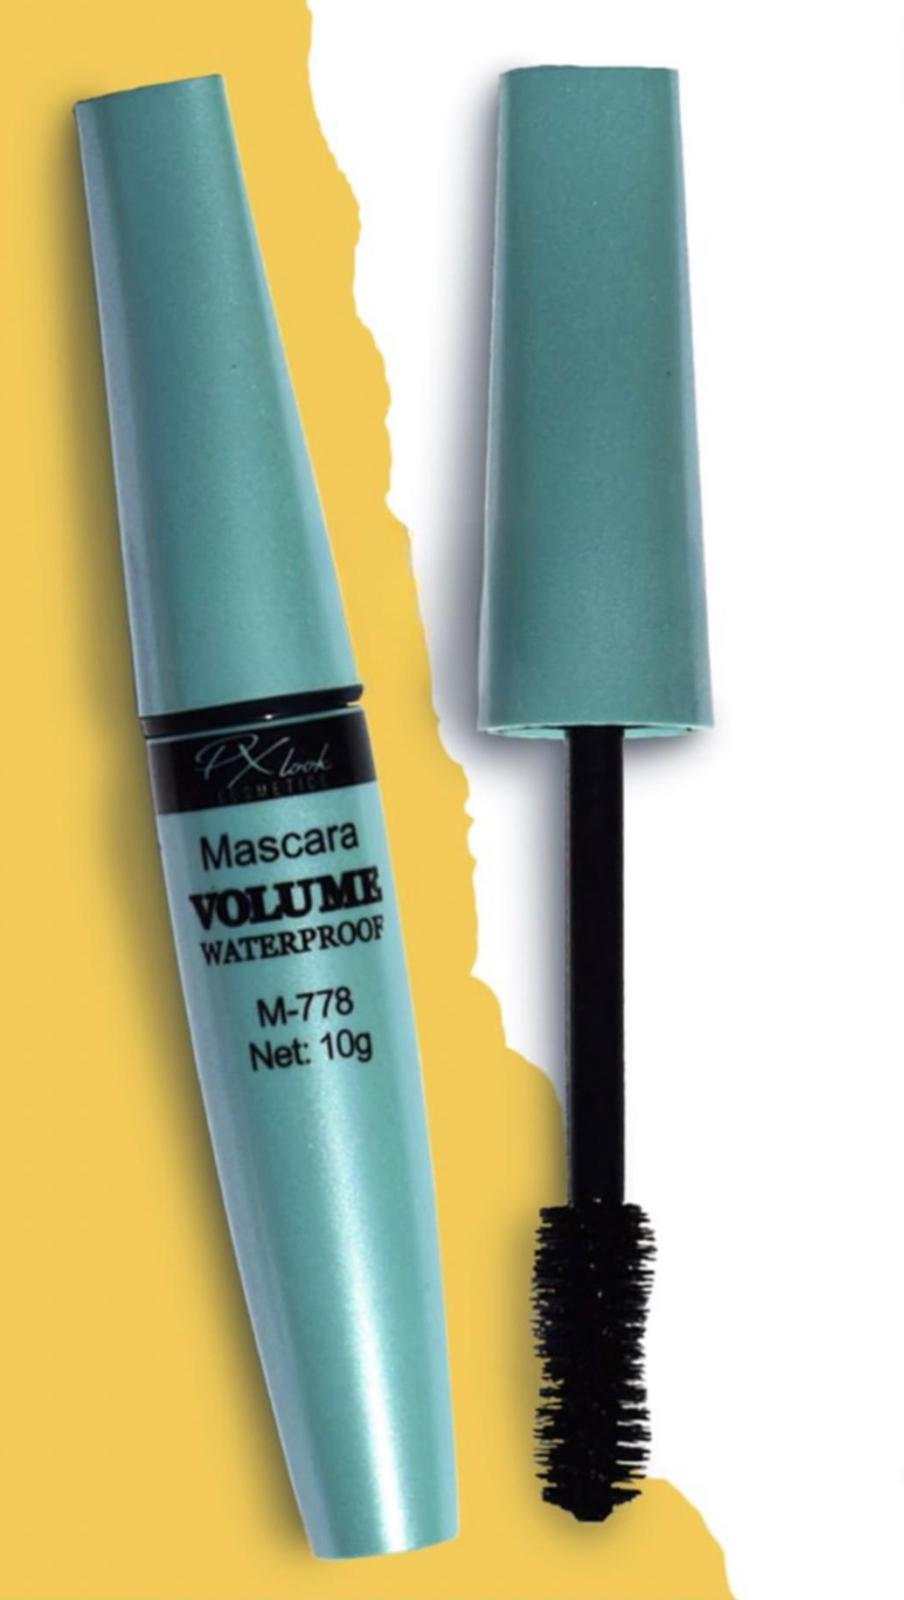 Volume Waterproof Mascara